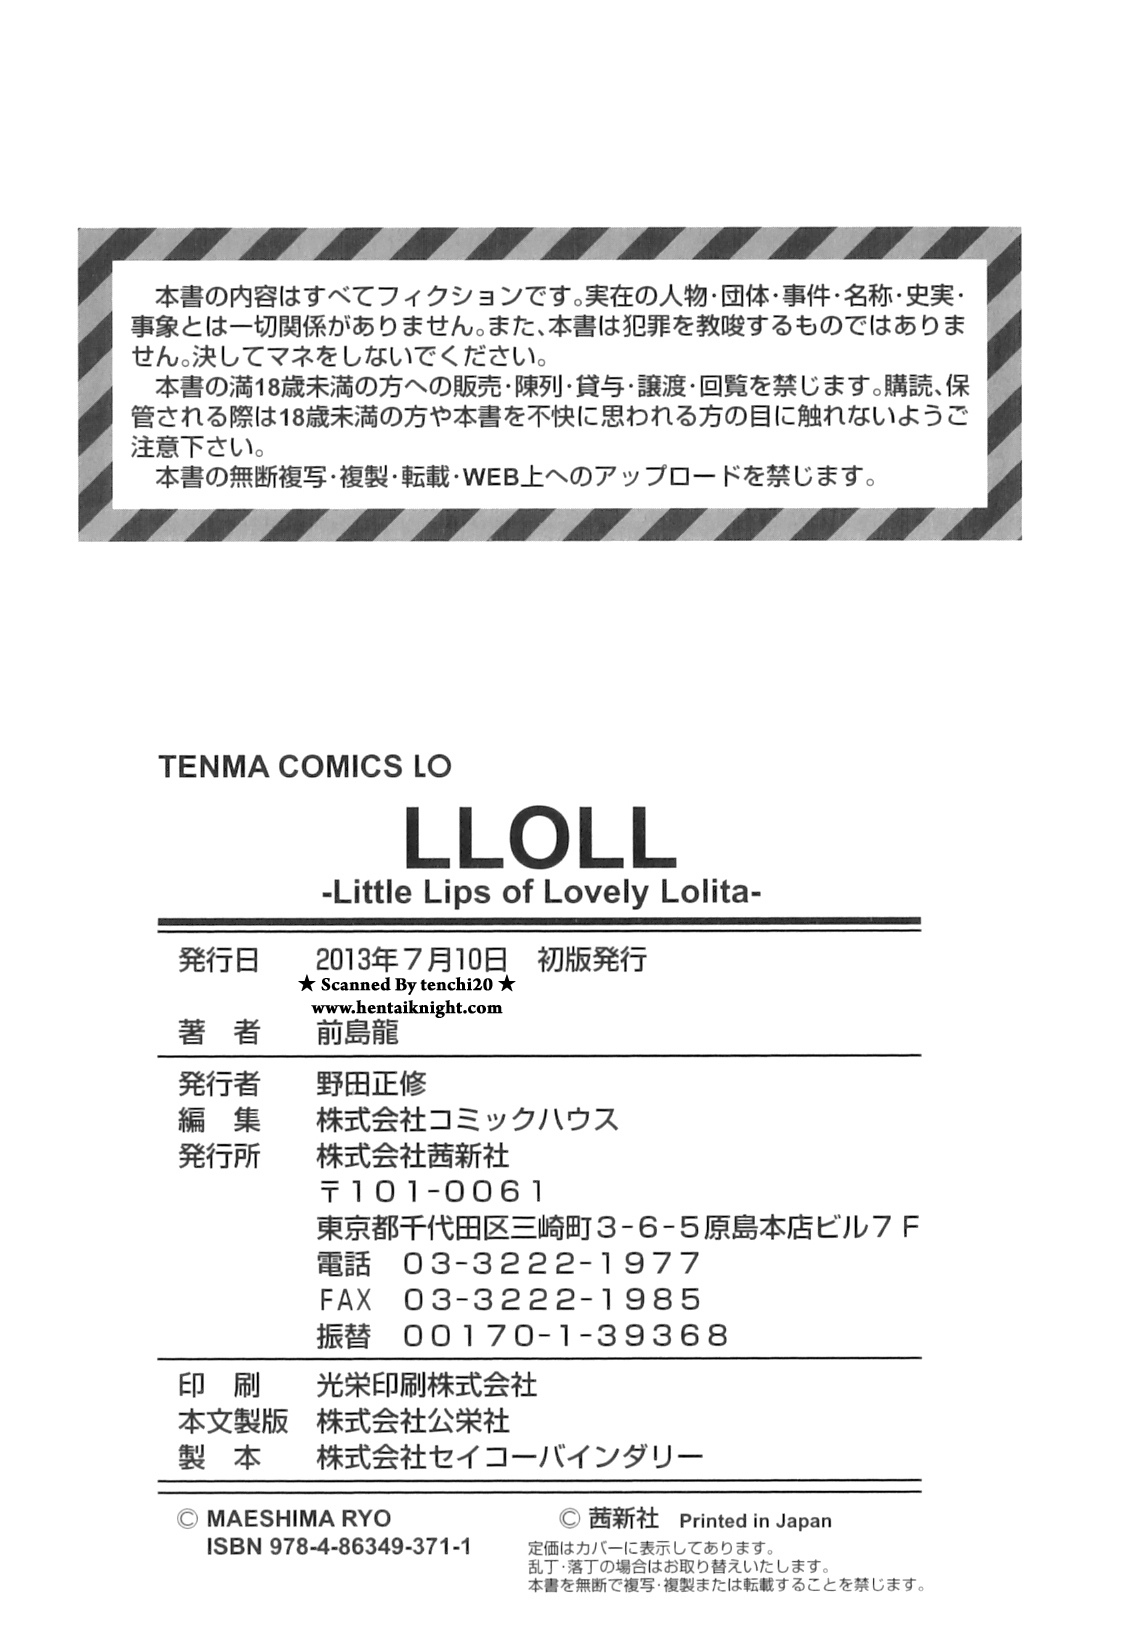 [前島龍] LLOLL -Little Lips of Lovely Lolita-